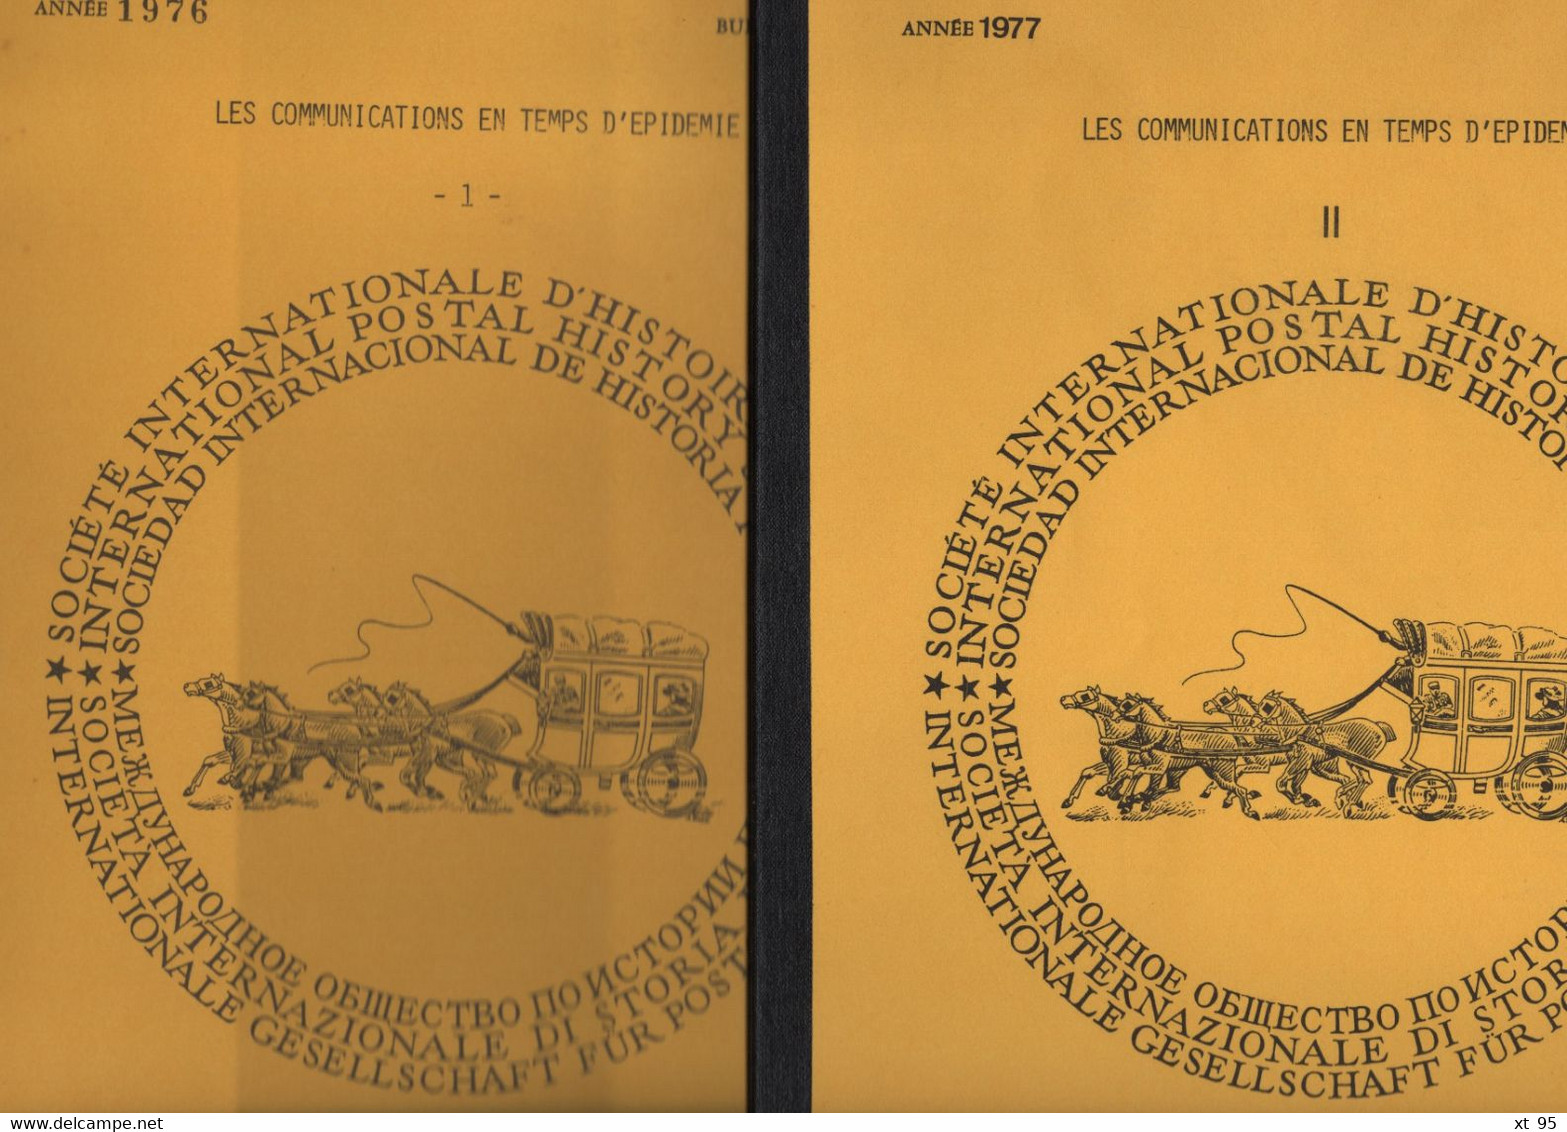 Societe Internationale Histoire Postale - N°32-33-34-35 - Les Communications En Temps D Epidemie I & II - Philatelie Und Postgeschichte